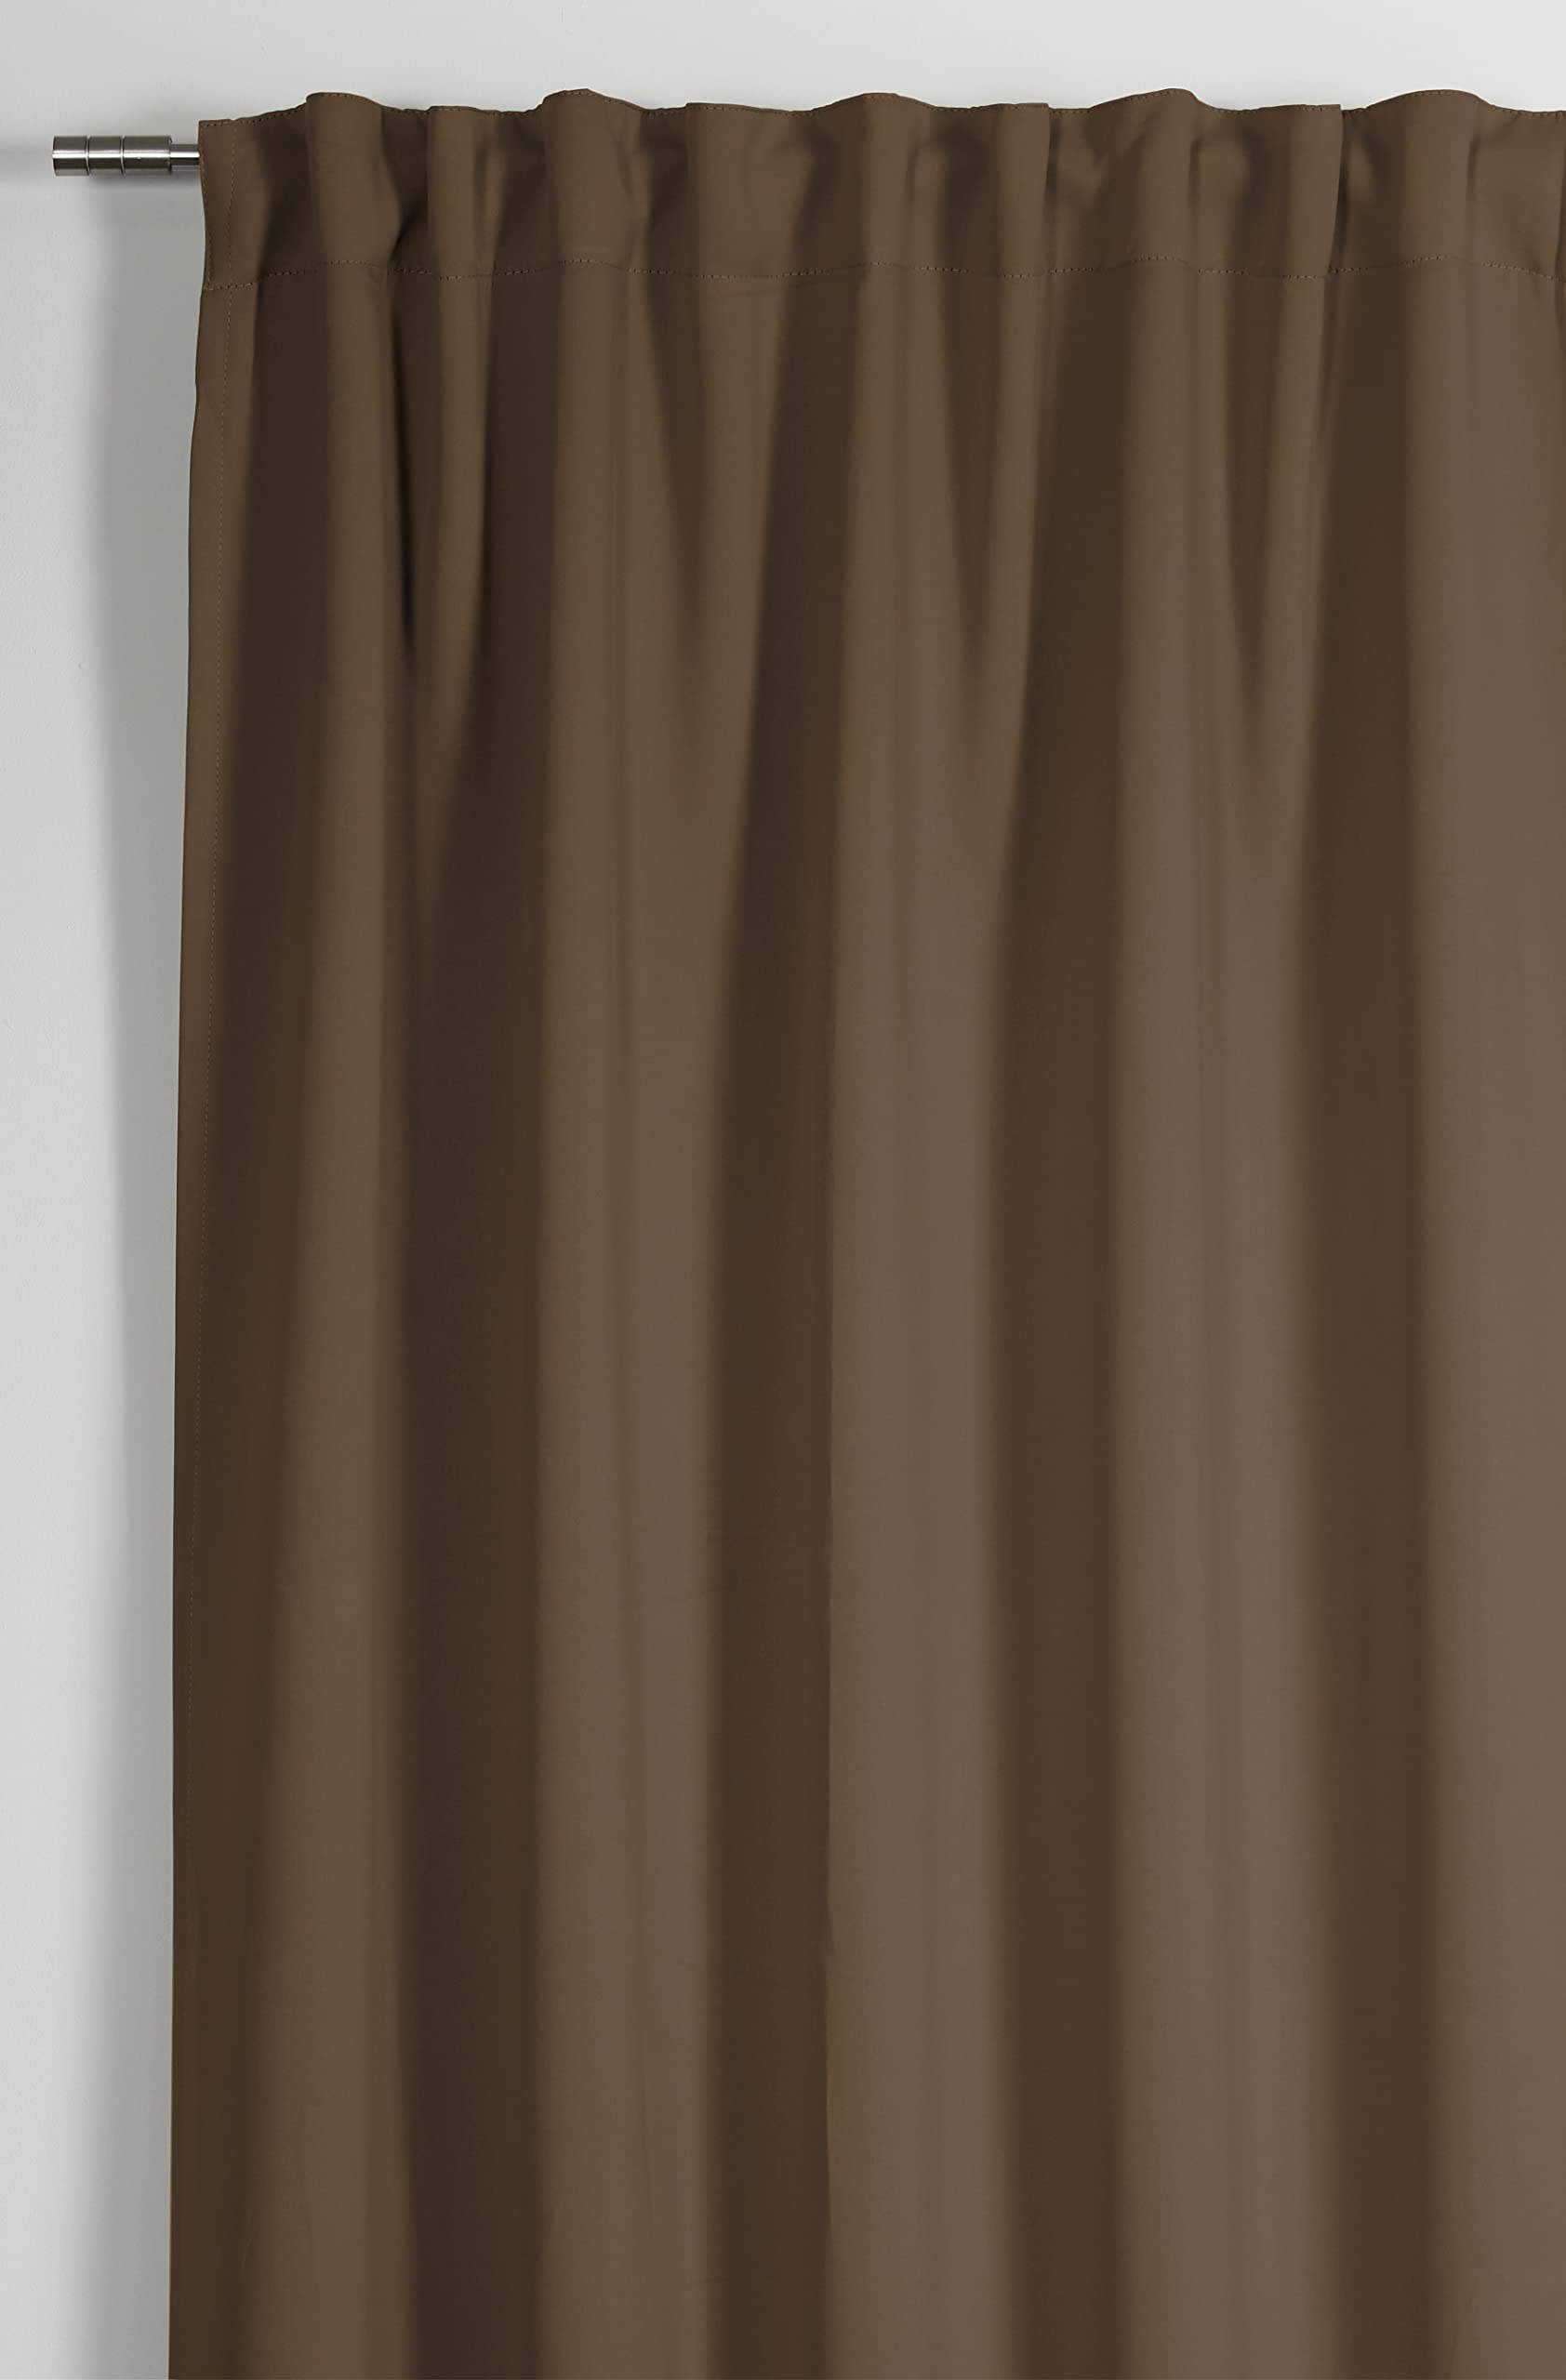 GARDINIA Vorhang mit integriertem Gardinenband, Gardine zur Abdunklung, Blickdicht, Verdunkelnd, Schallabsorbierend, Dimout, Taupe, 140 x 245 cm